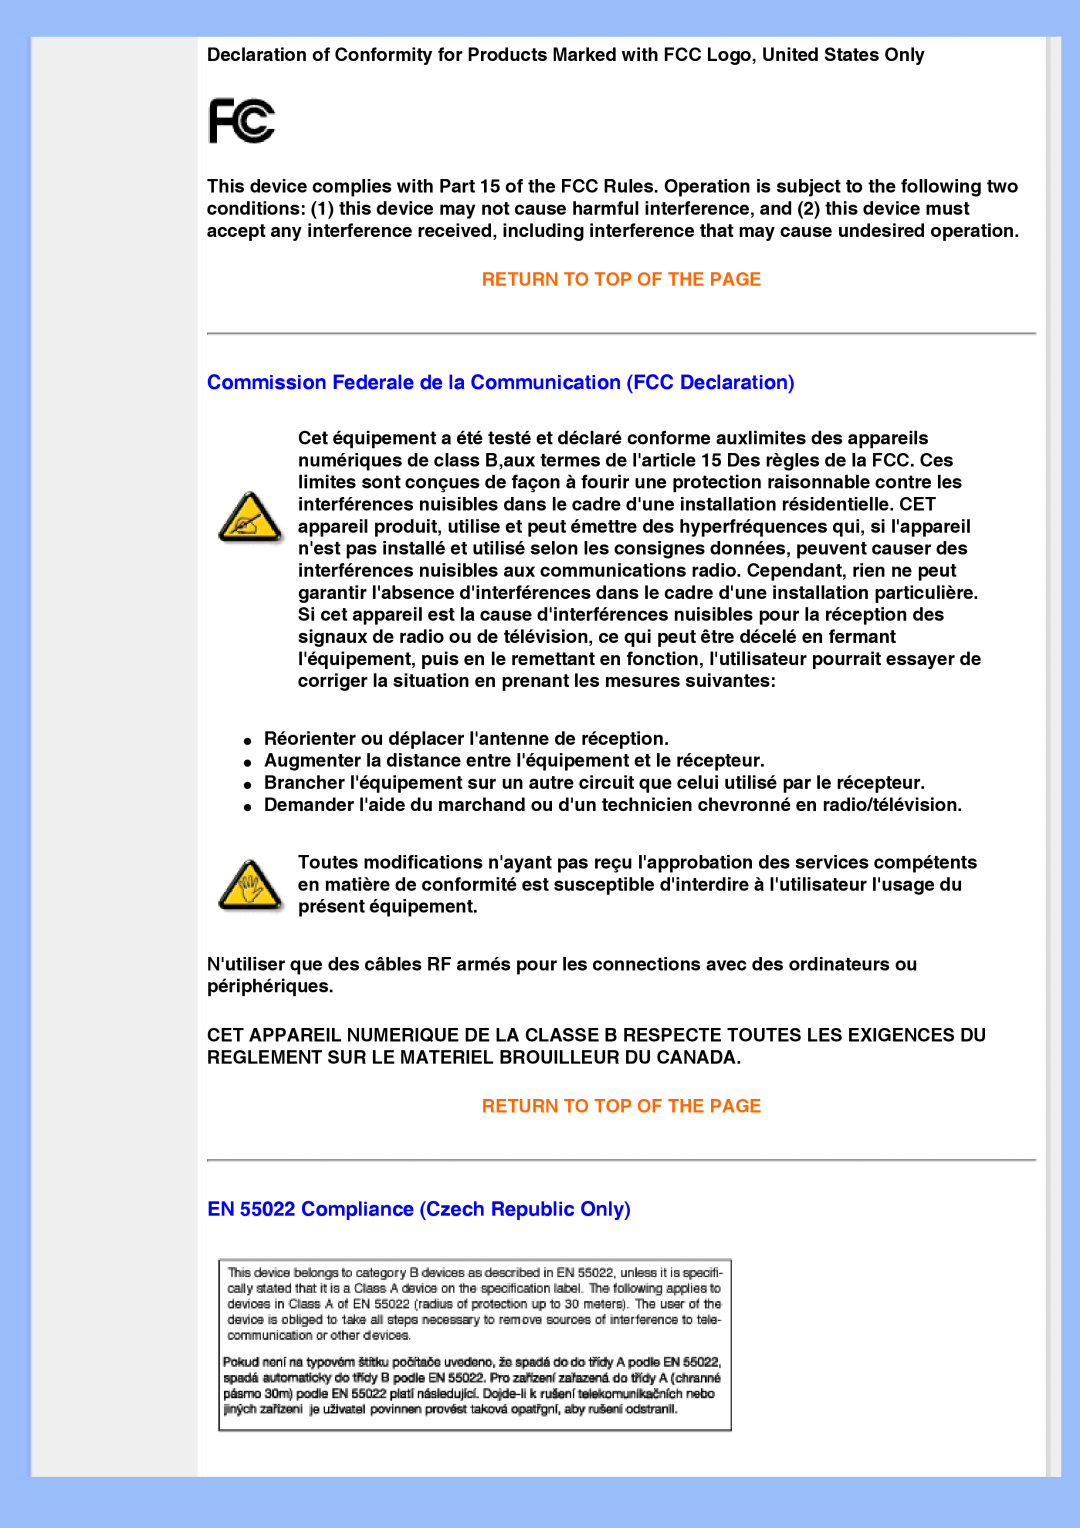 Philips 220VW8 user manual Commission Federale de la Communication FCC Declaration, EN 55022 Compliance Czech Republic Only 